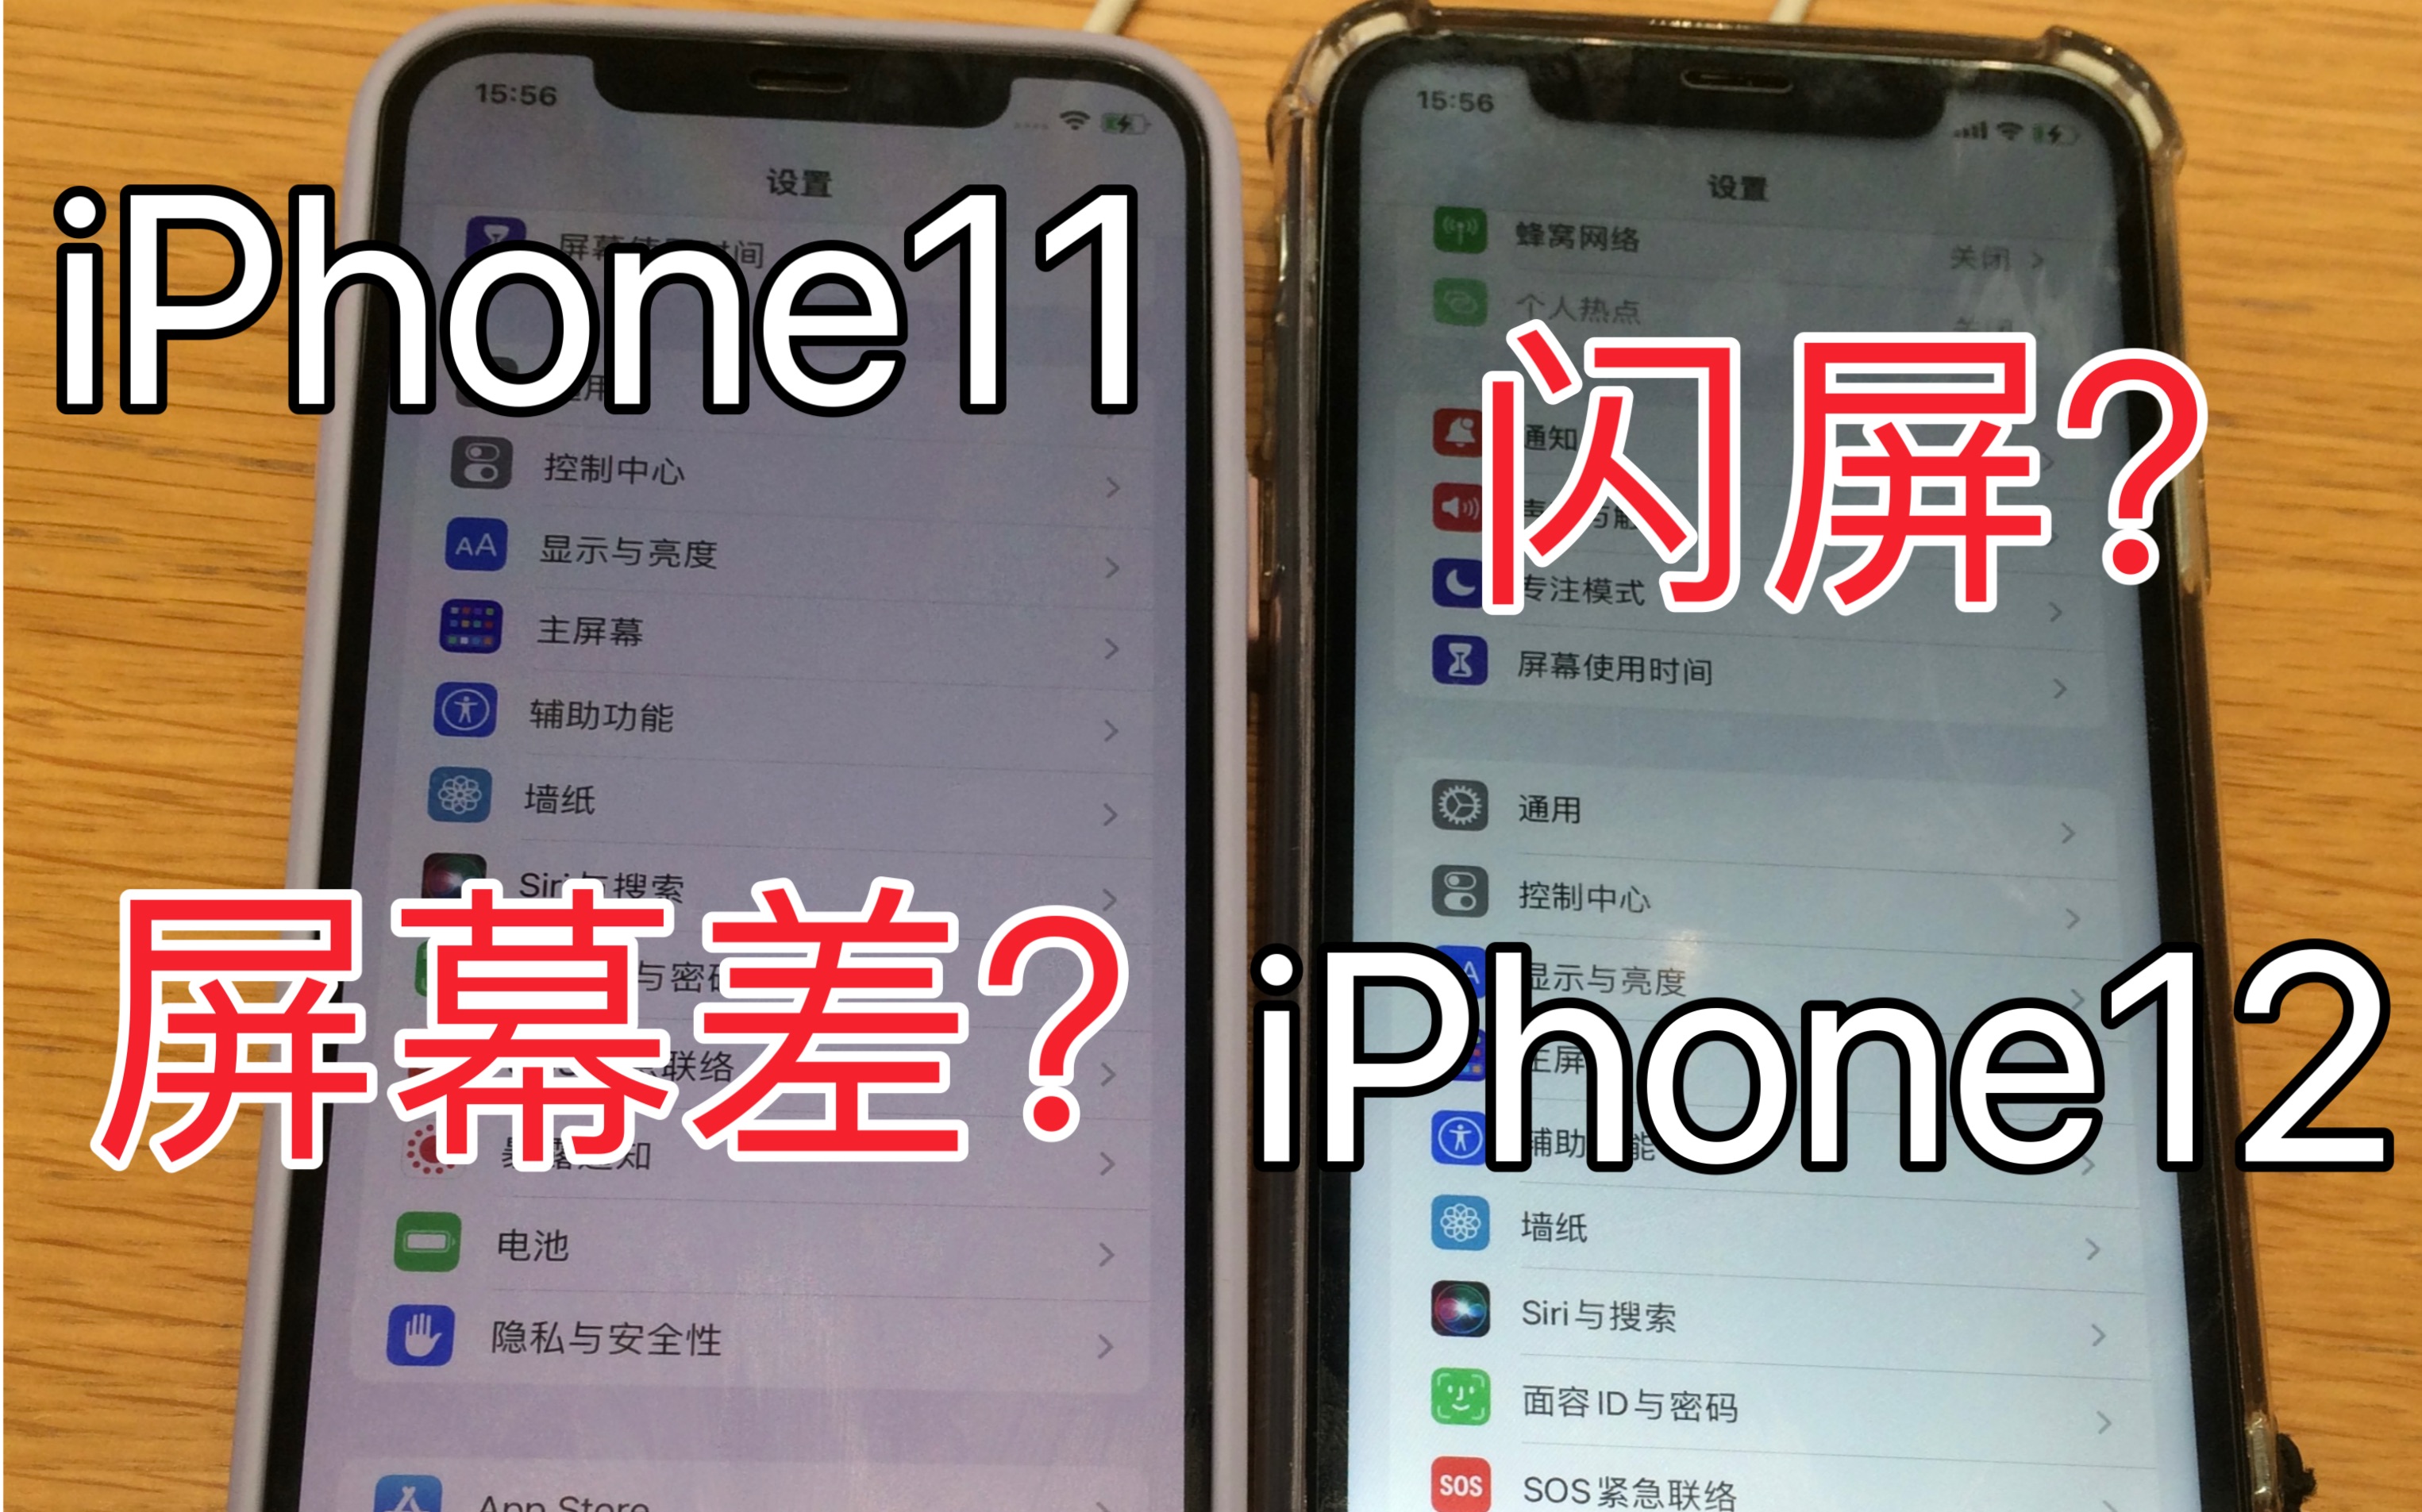 iPhone12与iPhone11屏幕闪屏与使用感受对比 OLED和LCD对比